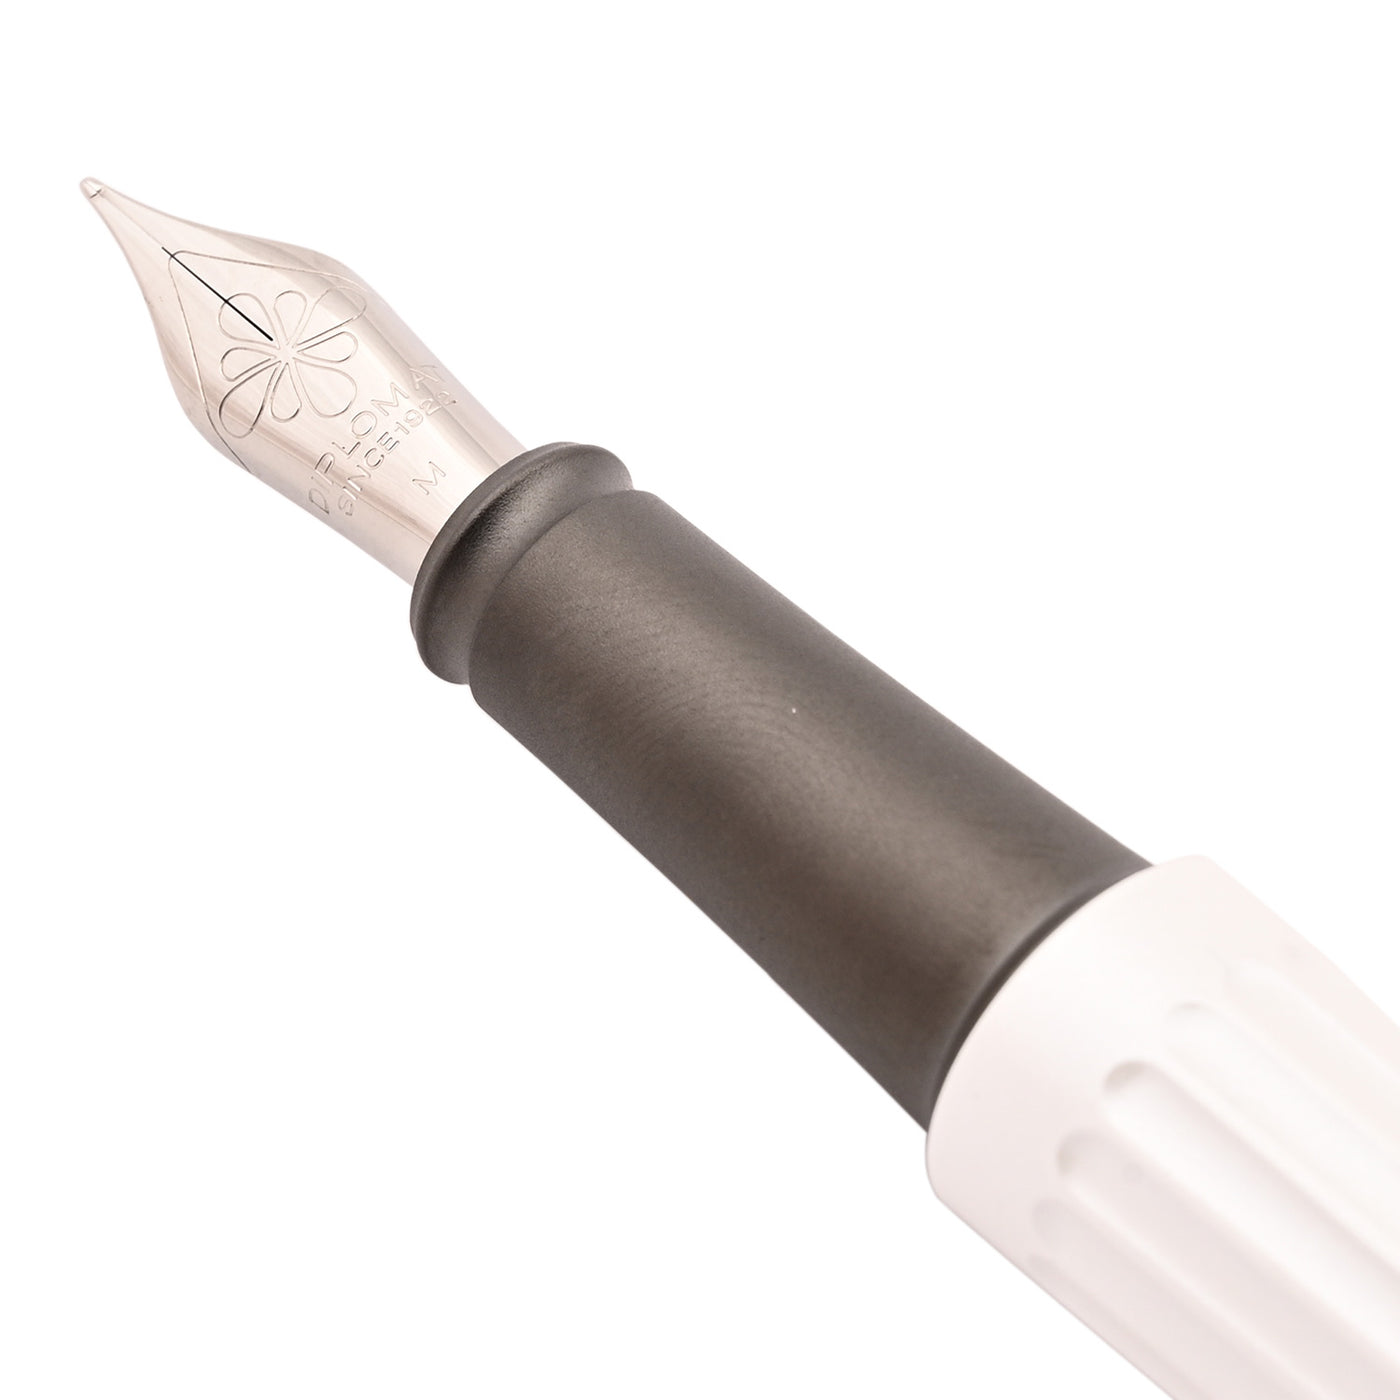 Diplomat Aero Fountain Pen - Pearly White 2